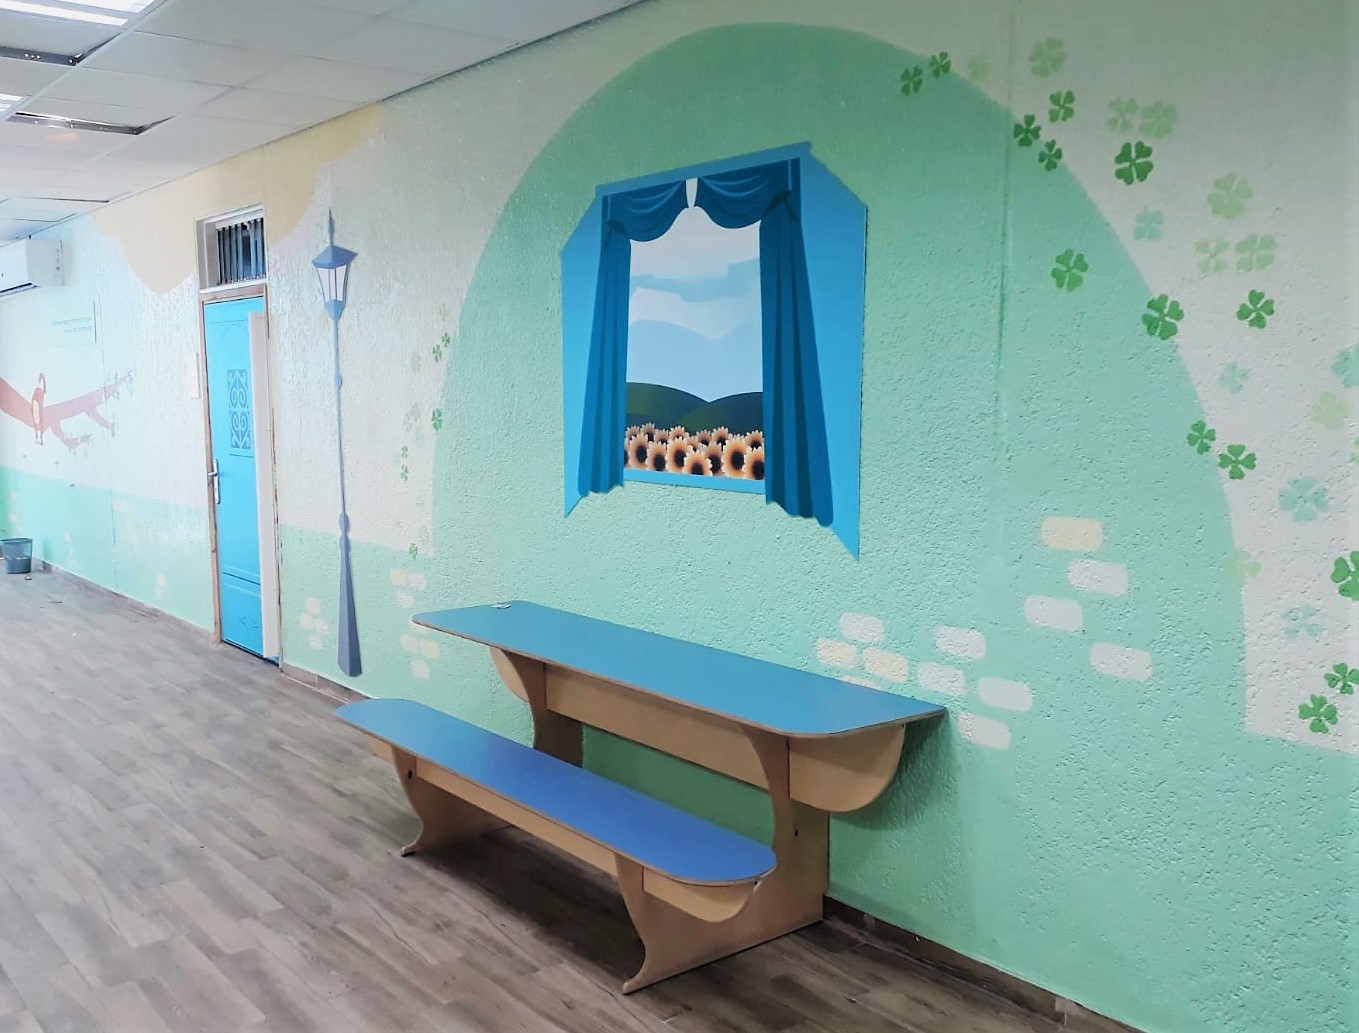 מבט מרחוק על רוחב הקיר של המבואה עיצוב מרחב מבואת בית הספר תל"י גילה